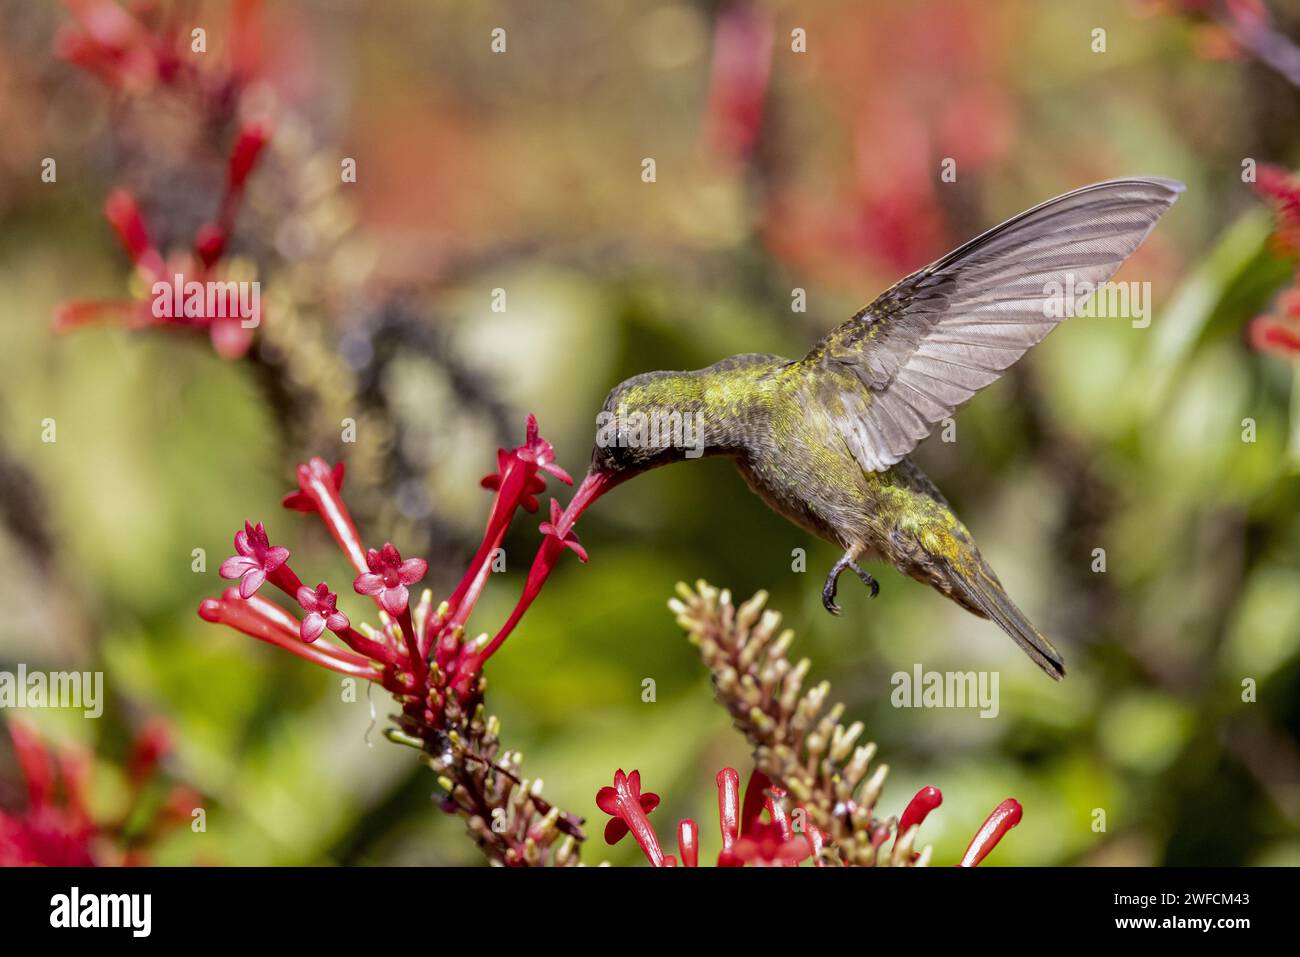 Dettaglio di un colibrì dorato che si nutre di nettare di fiori - Foto Stock